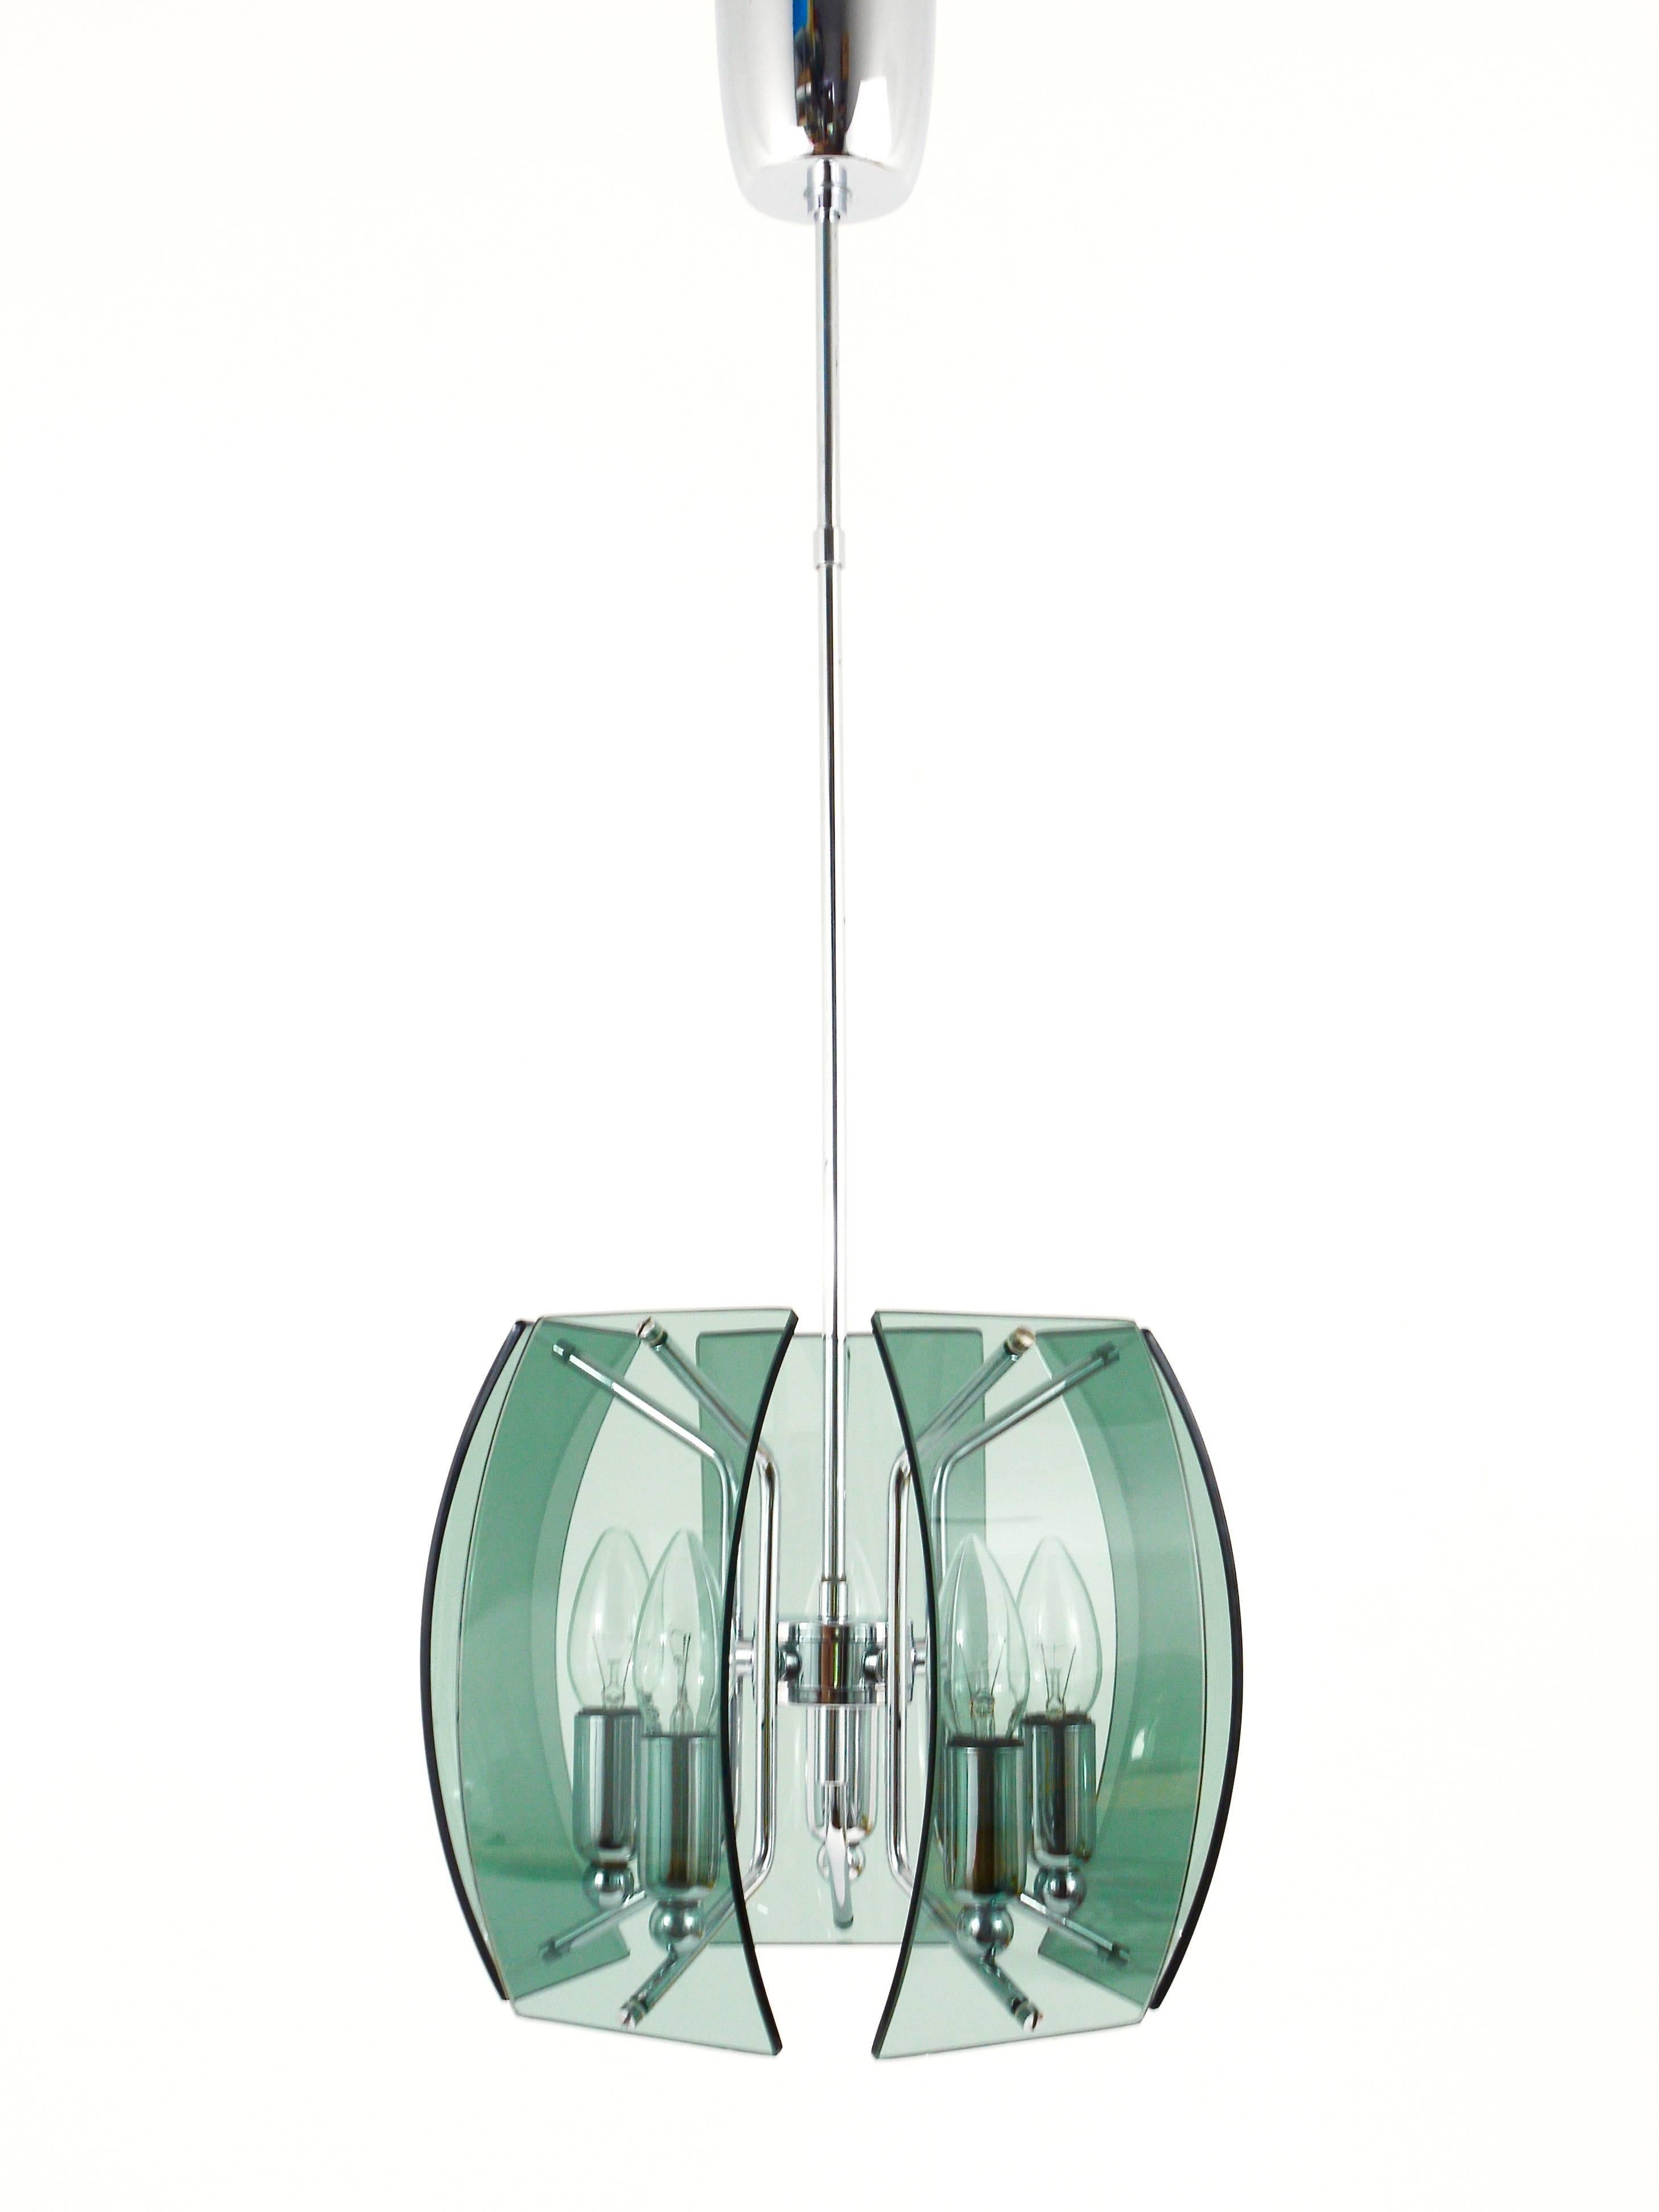 Eine schöne italienische Pendelleuchte der Moderne aus Glas aus den 1960er Jahren. Fünf grün/graue und gebogene Glasscheiben auf einem verchromten fünfarmigen Gestell. In sehr gutem Zustand. Die Höhe des Vorbaus kann auf Wunsch kostenlos angepasst